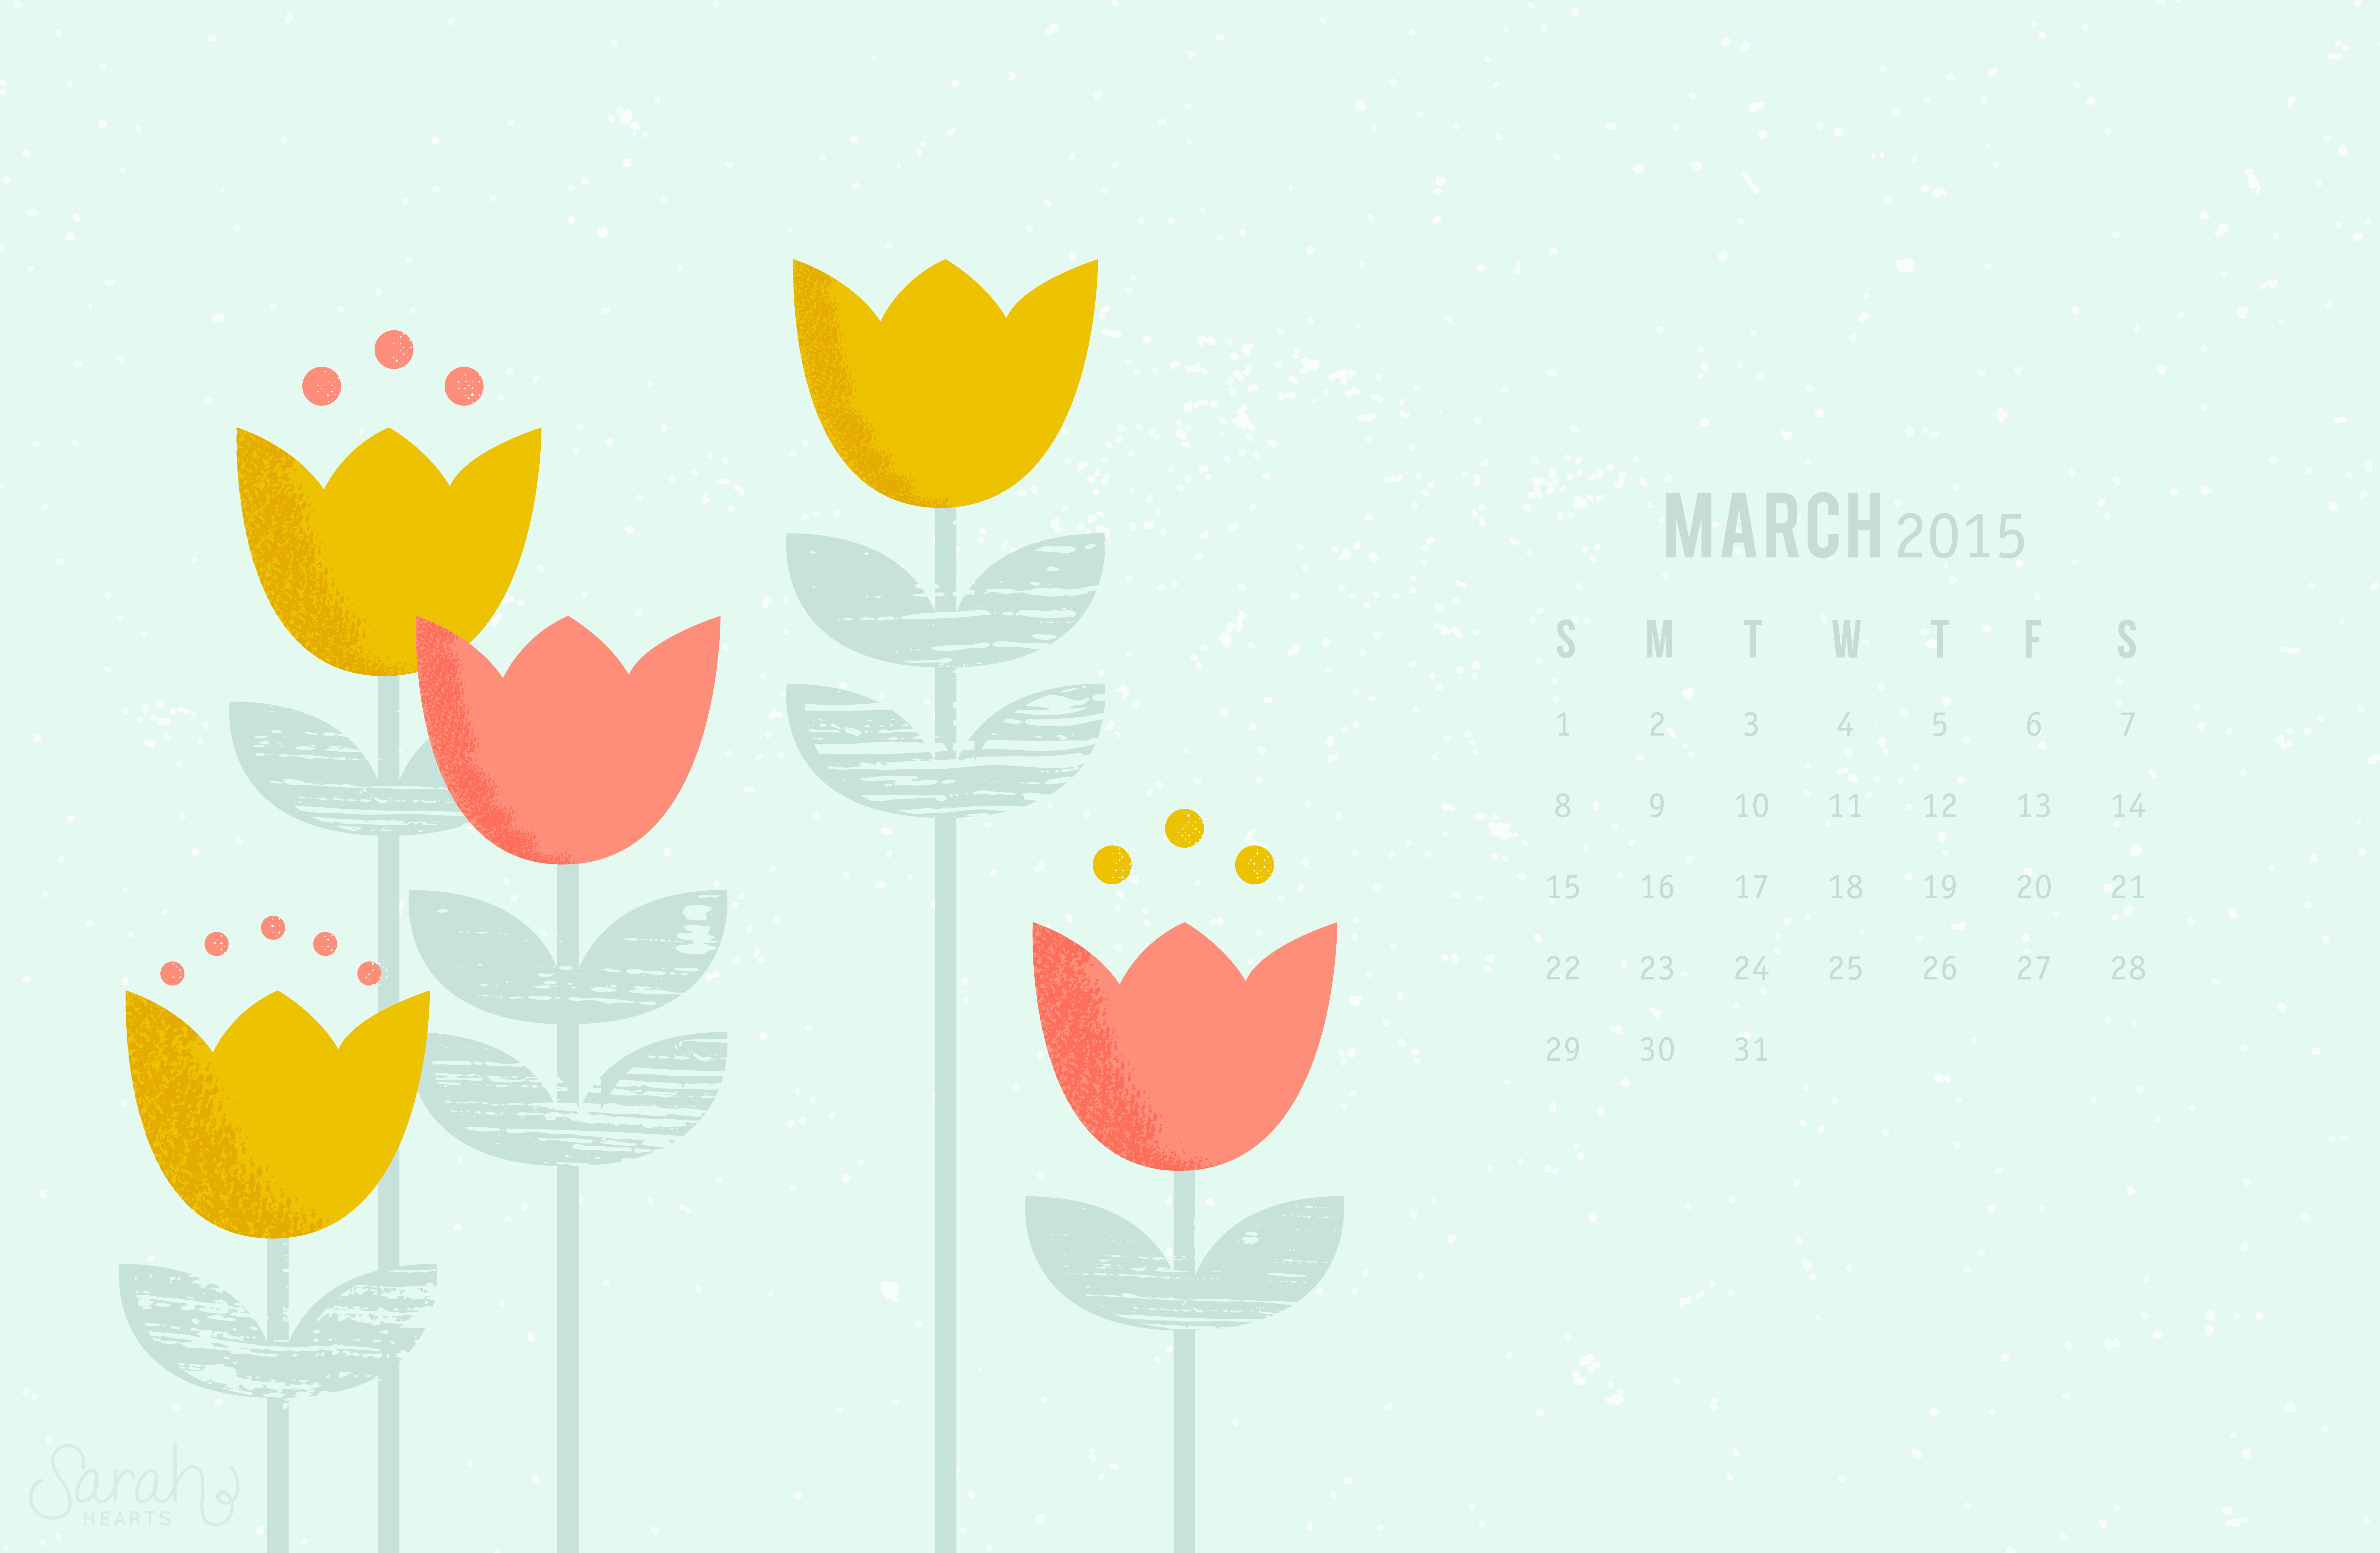 Tháng ba (March) đã đến, hãy xem ngay những hình nền (Wallpaper) đầy màu sắc để tôn vinh tháng này! Một lịch (Calendar) đầy sắc màu và tươi mới với các ngày trong tháng sẽ mang lại nhiều cảm hứng cho cuộc sống của bạn. Hãy nhanh tay tải xuống và thể hiện phong cách thời trang của riêng mình!